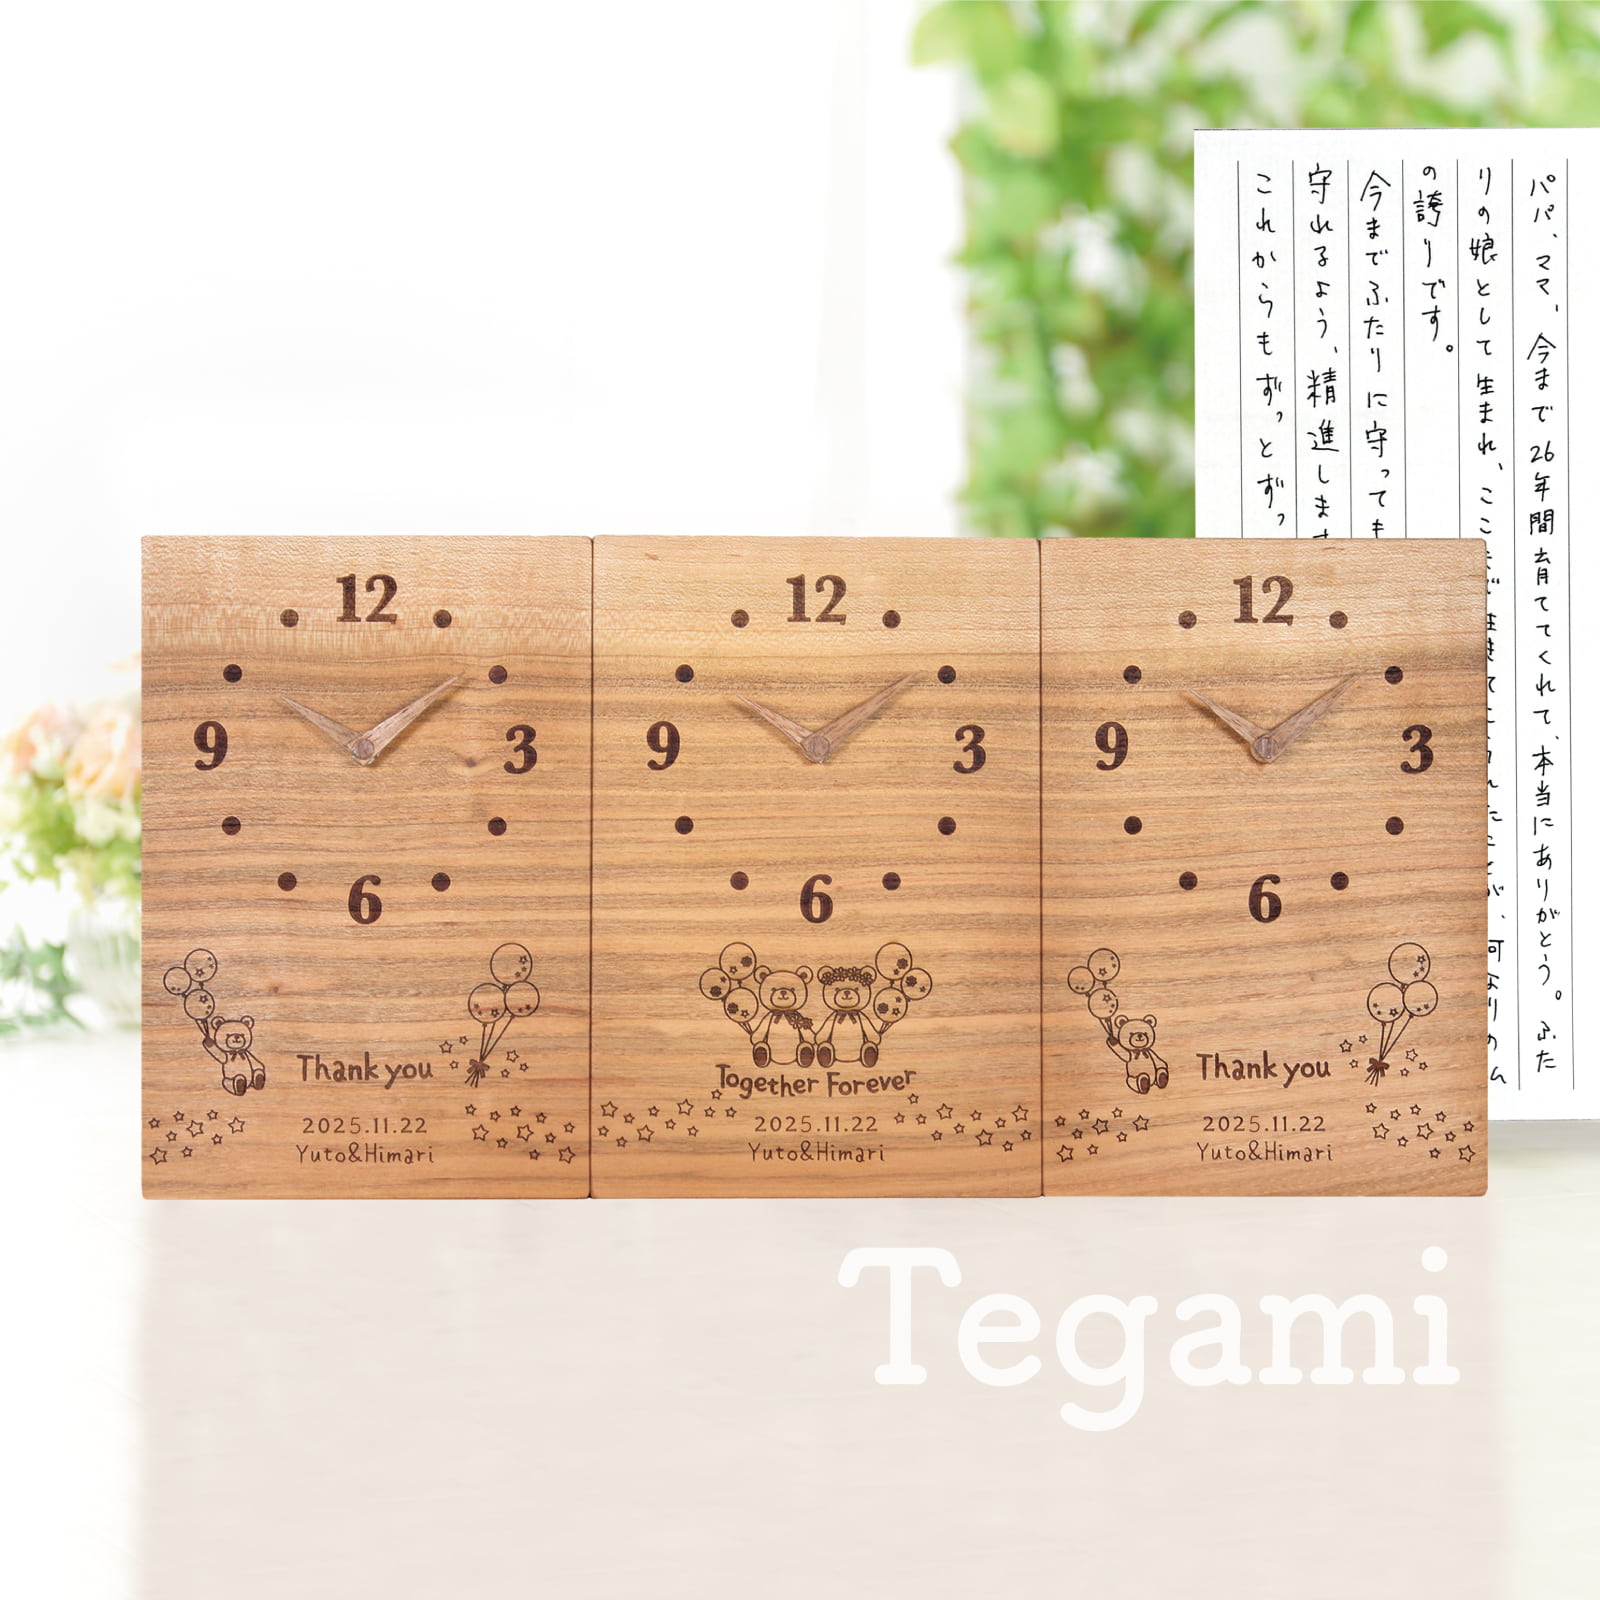 三連時計「Tegami」